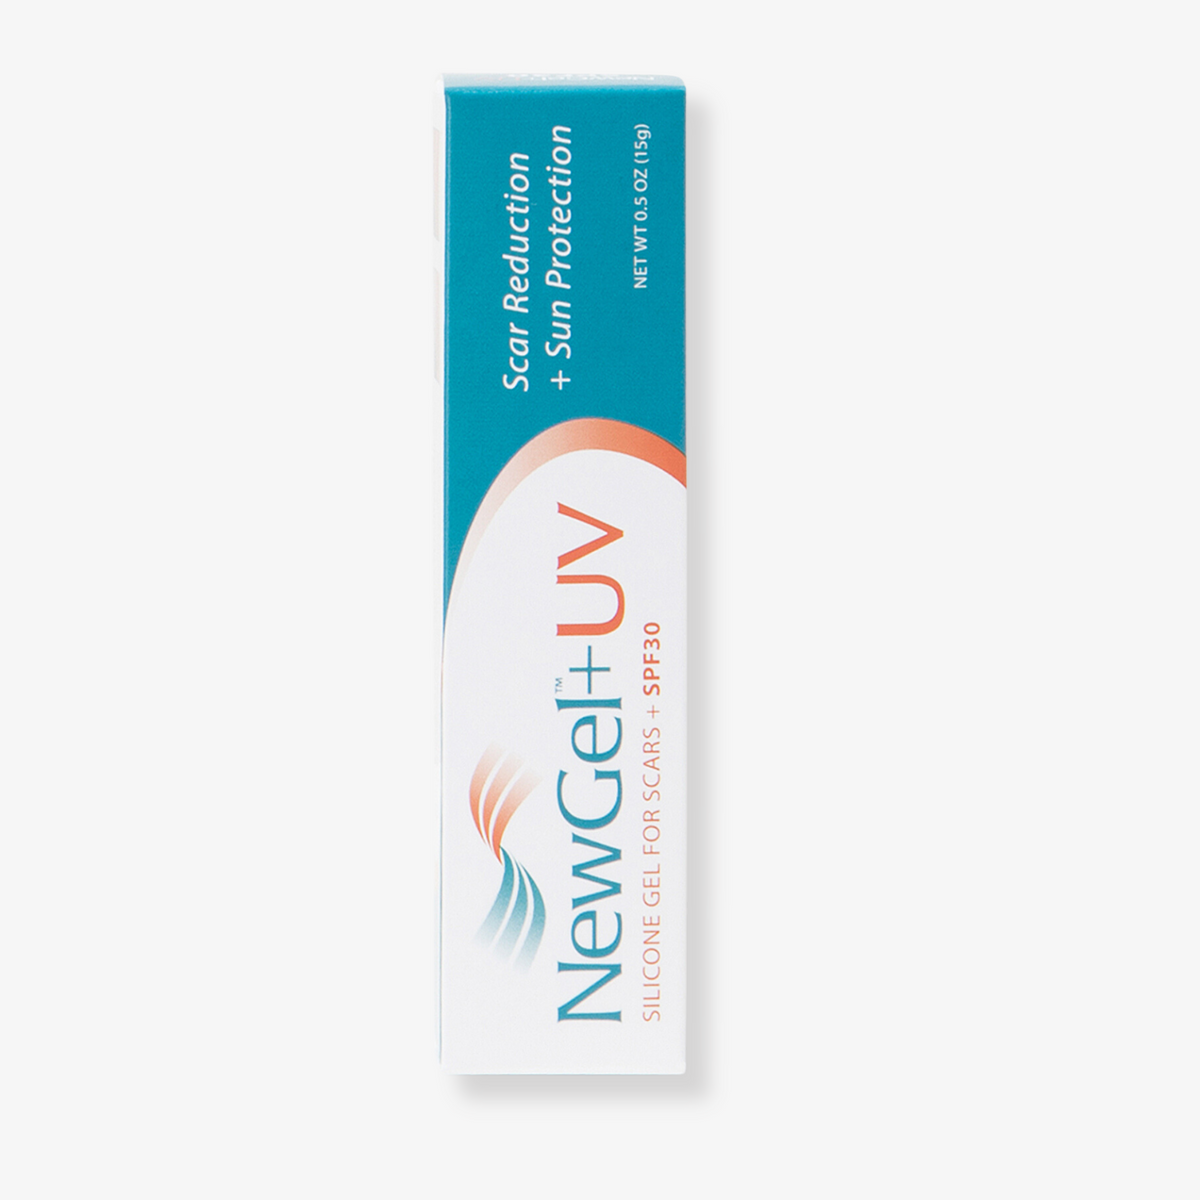 NewGel+ UV Silicone Spf30 Gel For Scar 15gm, Medicina Pharmacy – Medicina  Online Pharmacy